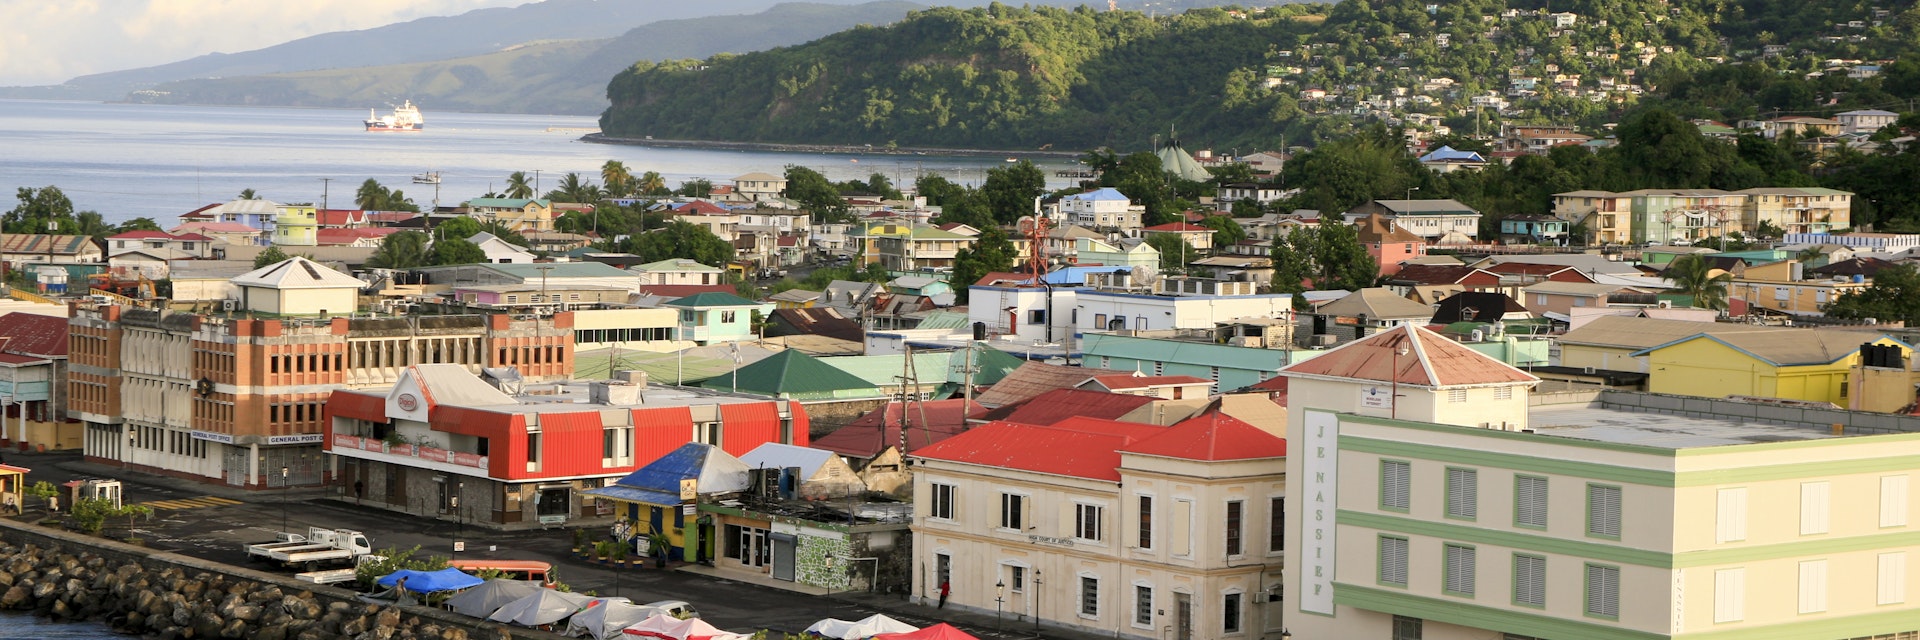 Roseau, Dominica, December 4, 2011. A panorama of Roseau, capital of Dominica.